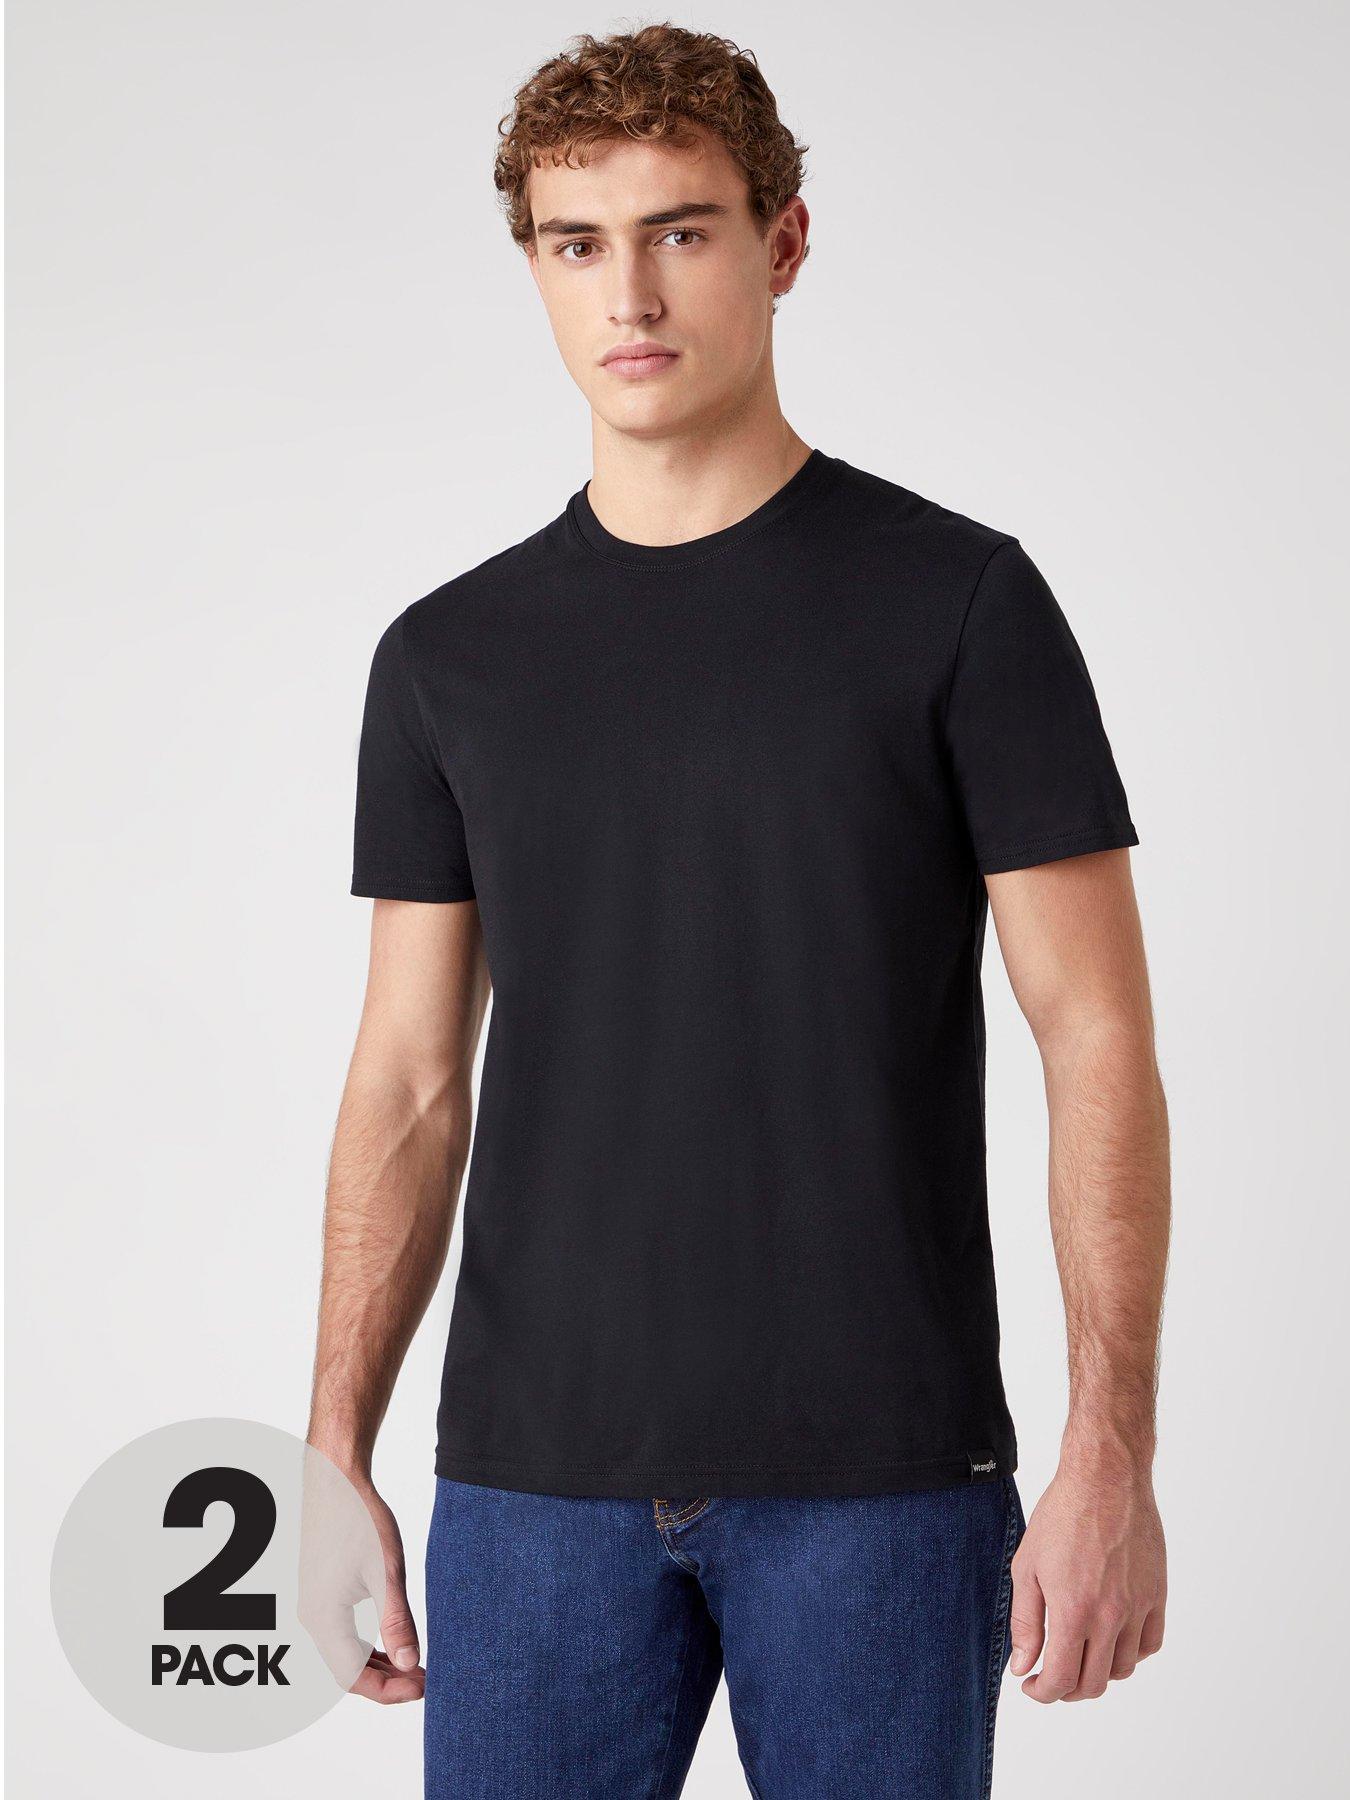 Men Plus Size 2 Pack T-shirts